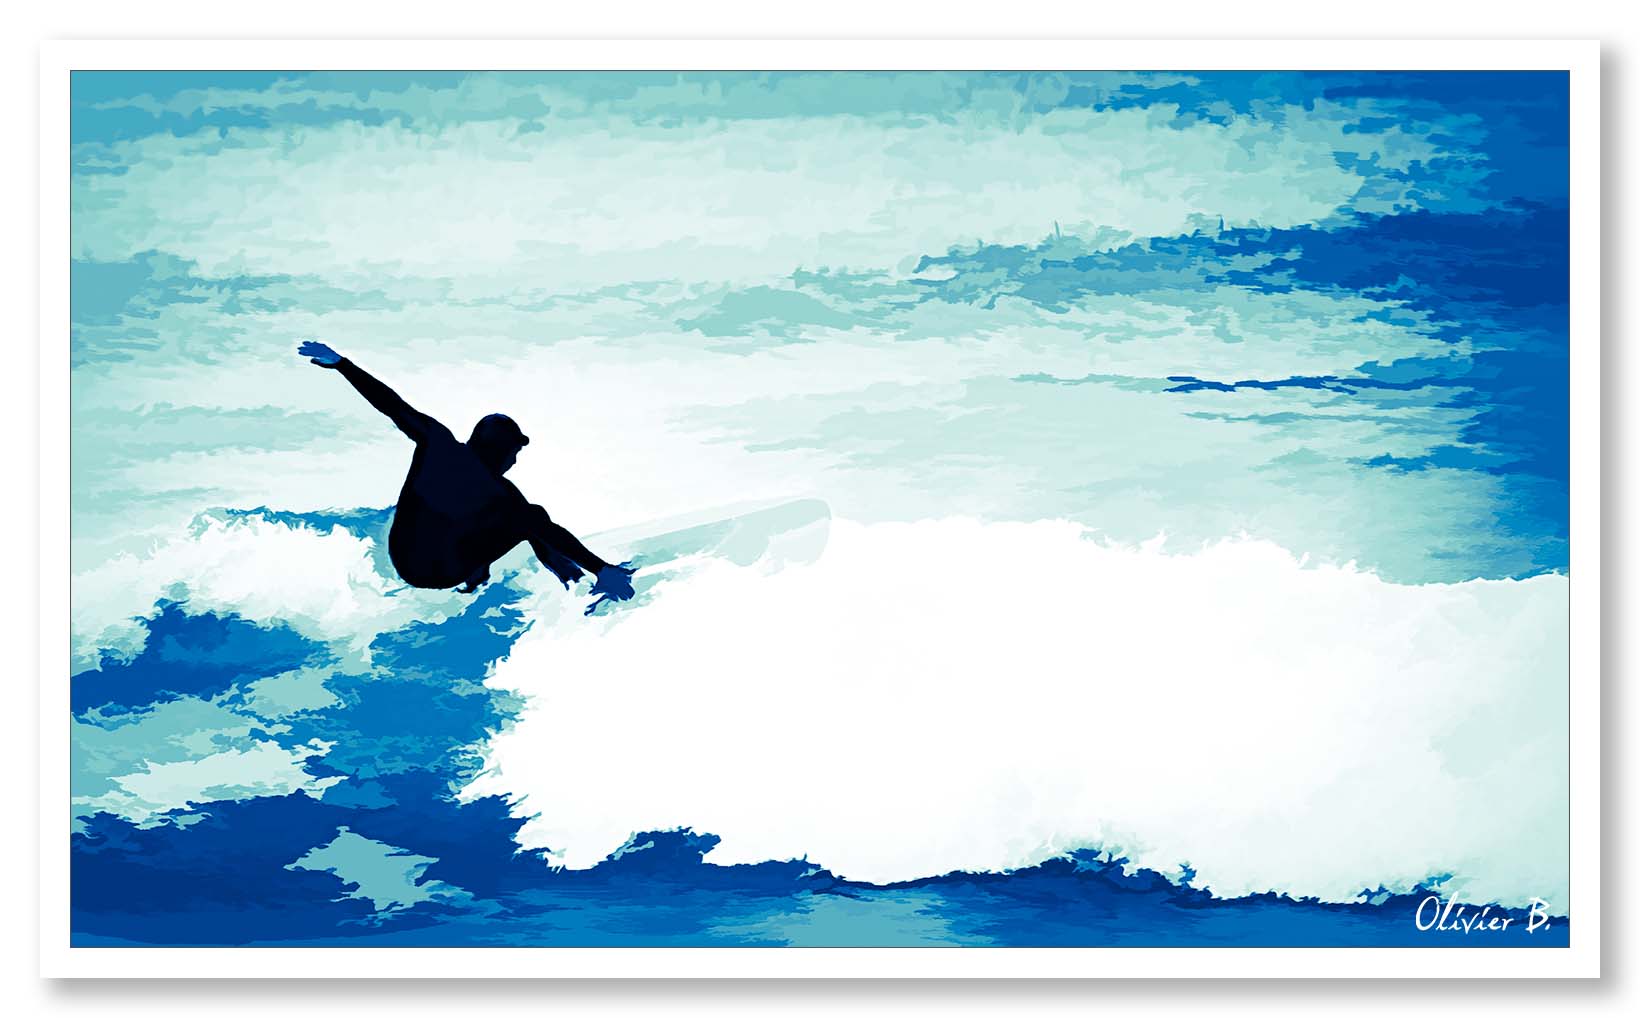 Quand je surf, je vois la vie en bleue dit le surfeur au sommet de la vague